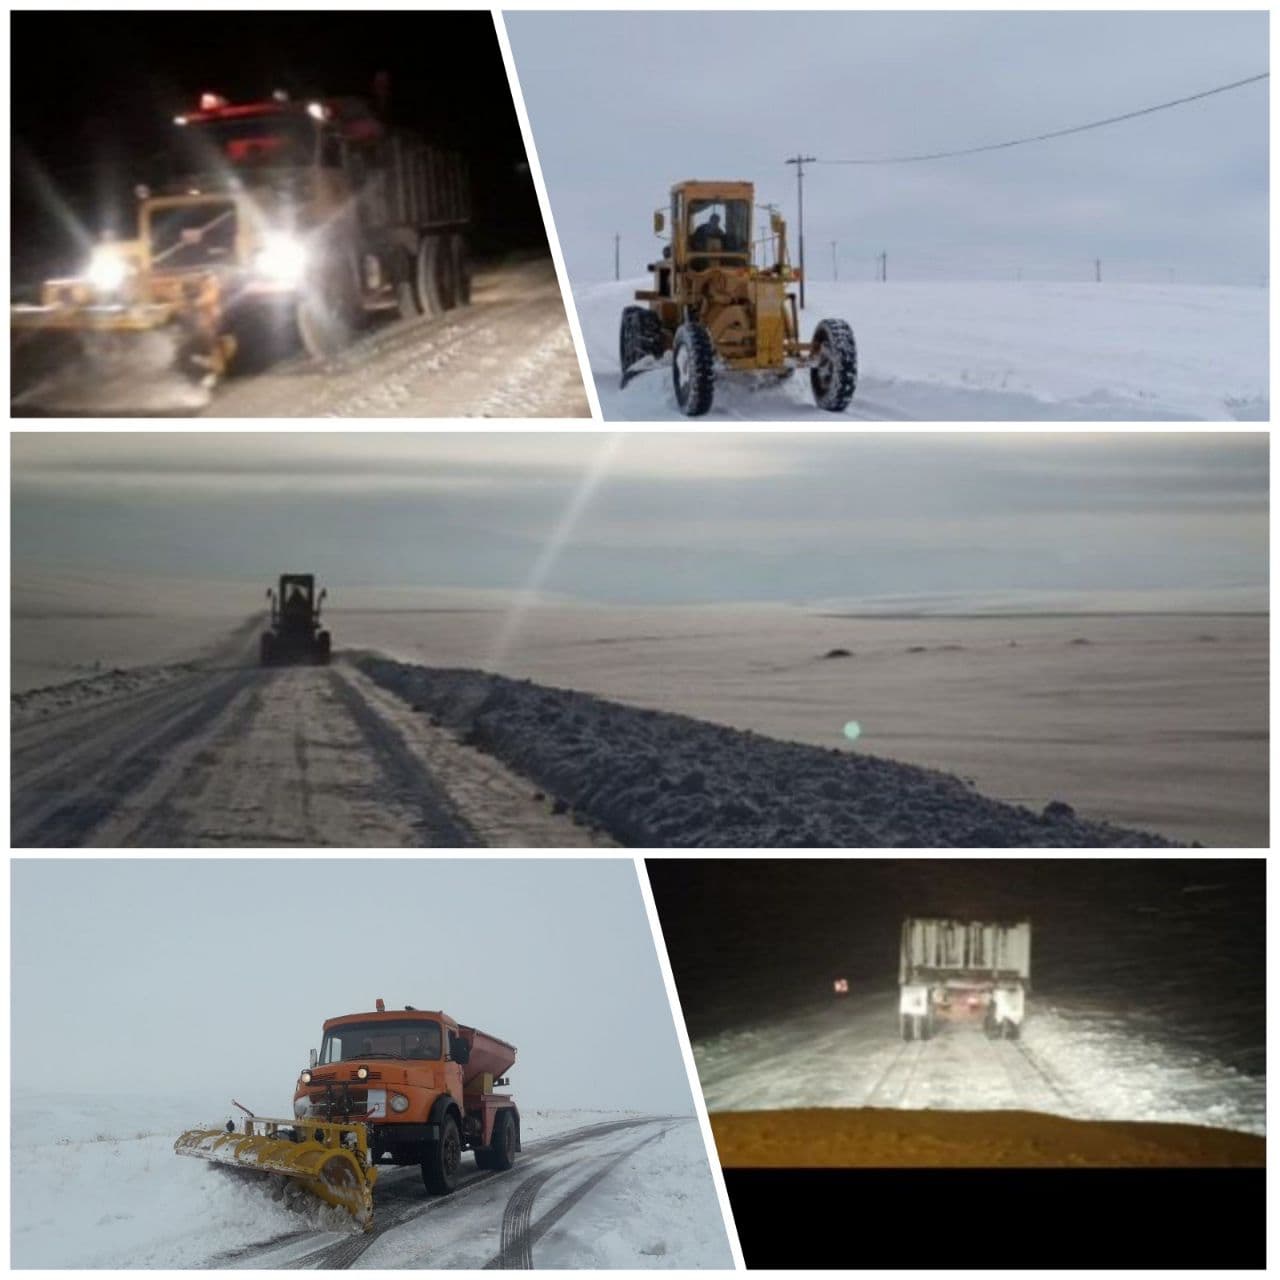 بسیج ماشین آلات راهداری هشترود برای برف روبی و مسیرگشائی